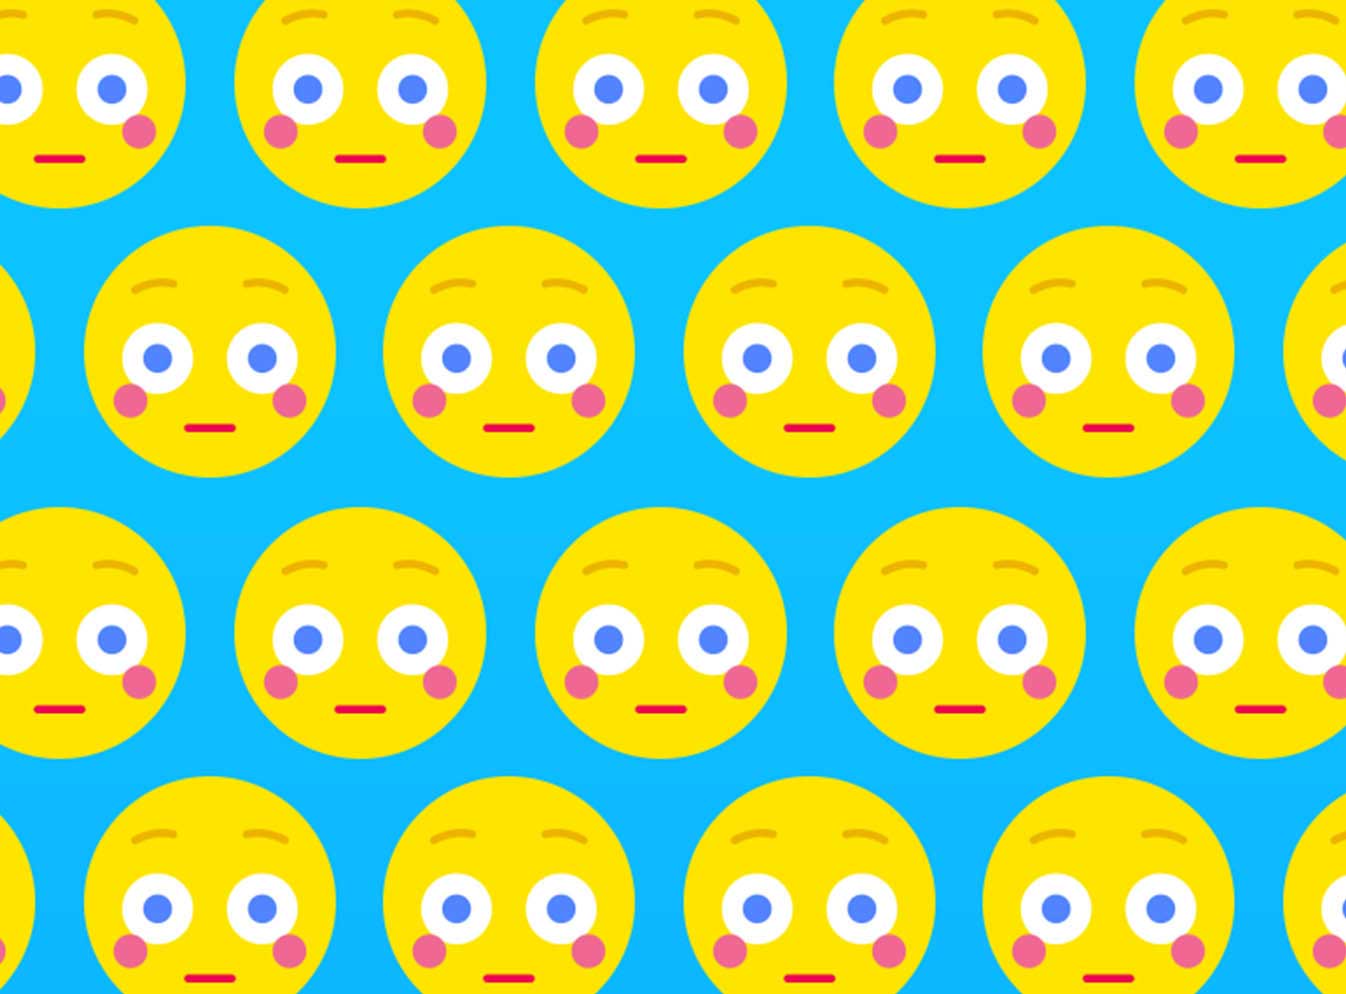 Tile of emoji faces